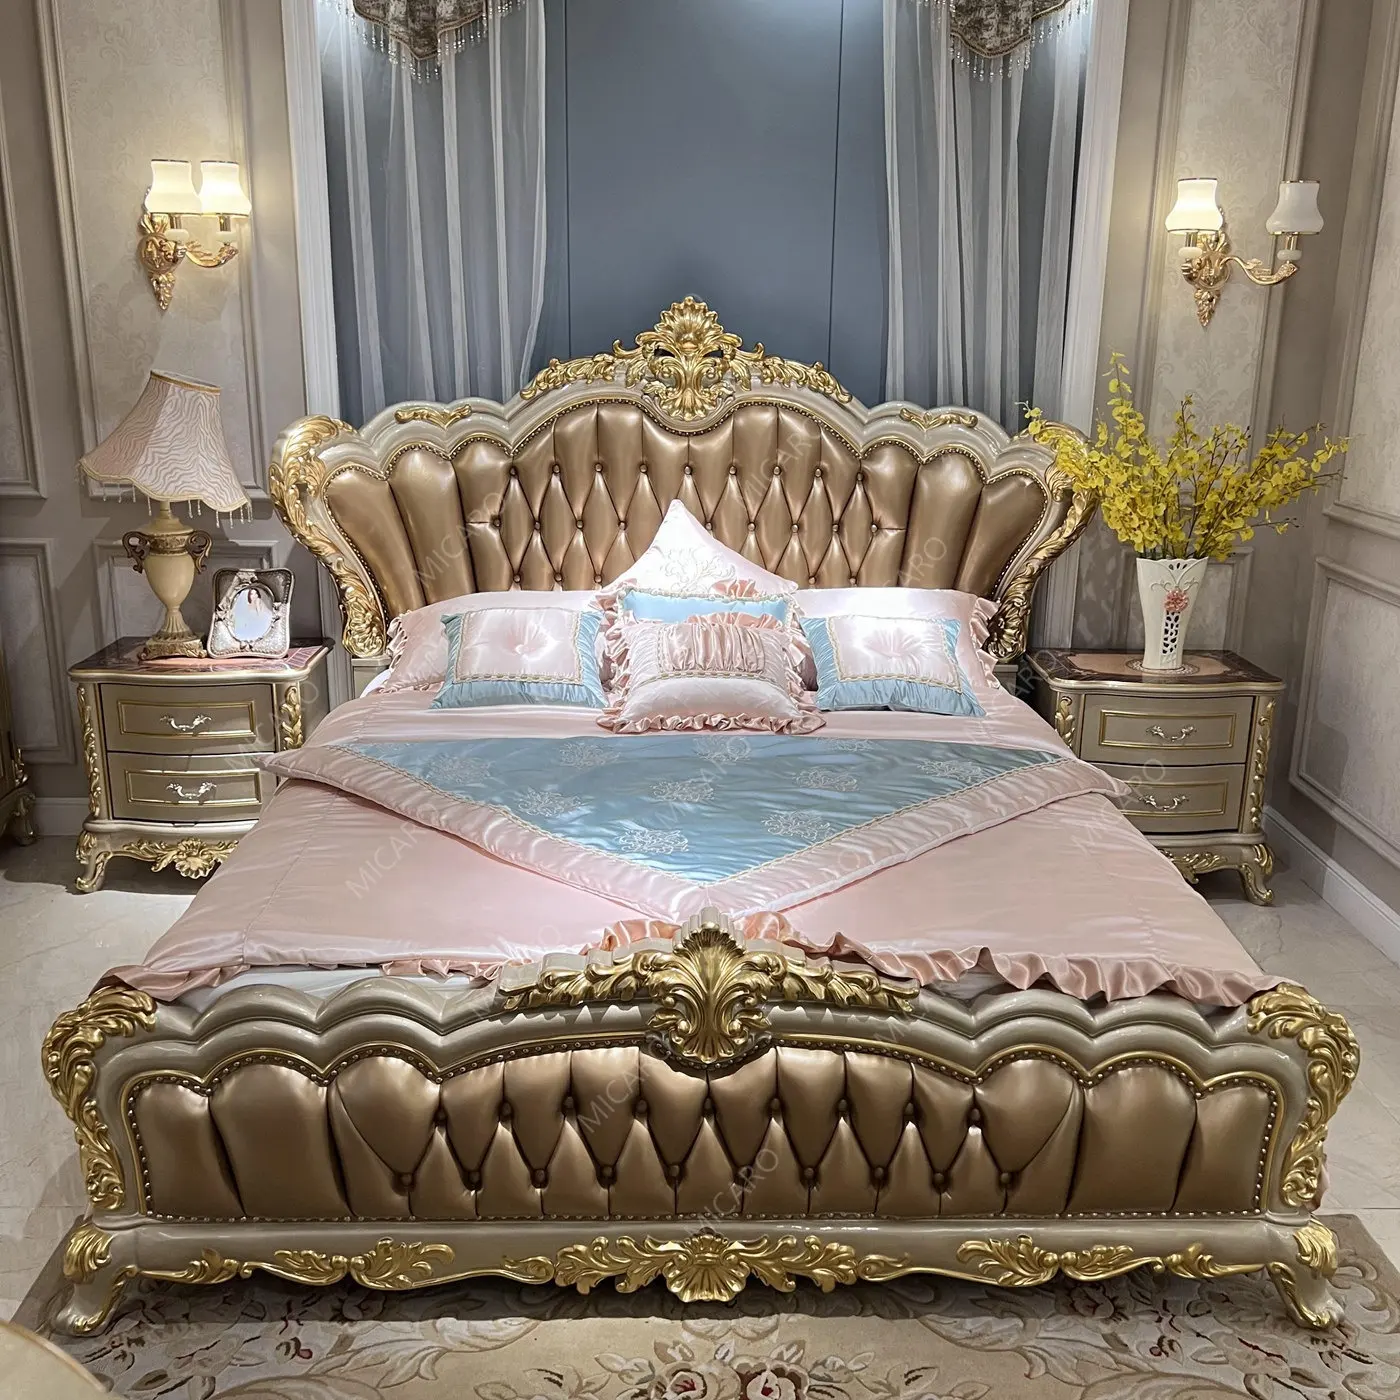 Juego de dormitorio doble tallado de madera de estilo italiano real, muebles, cama clásica